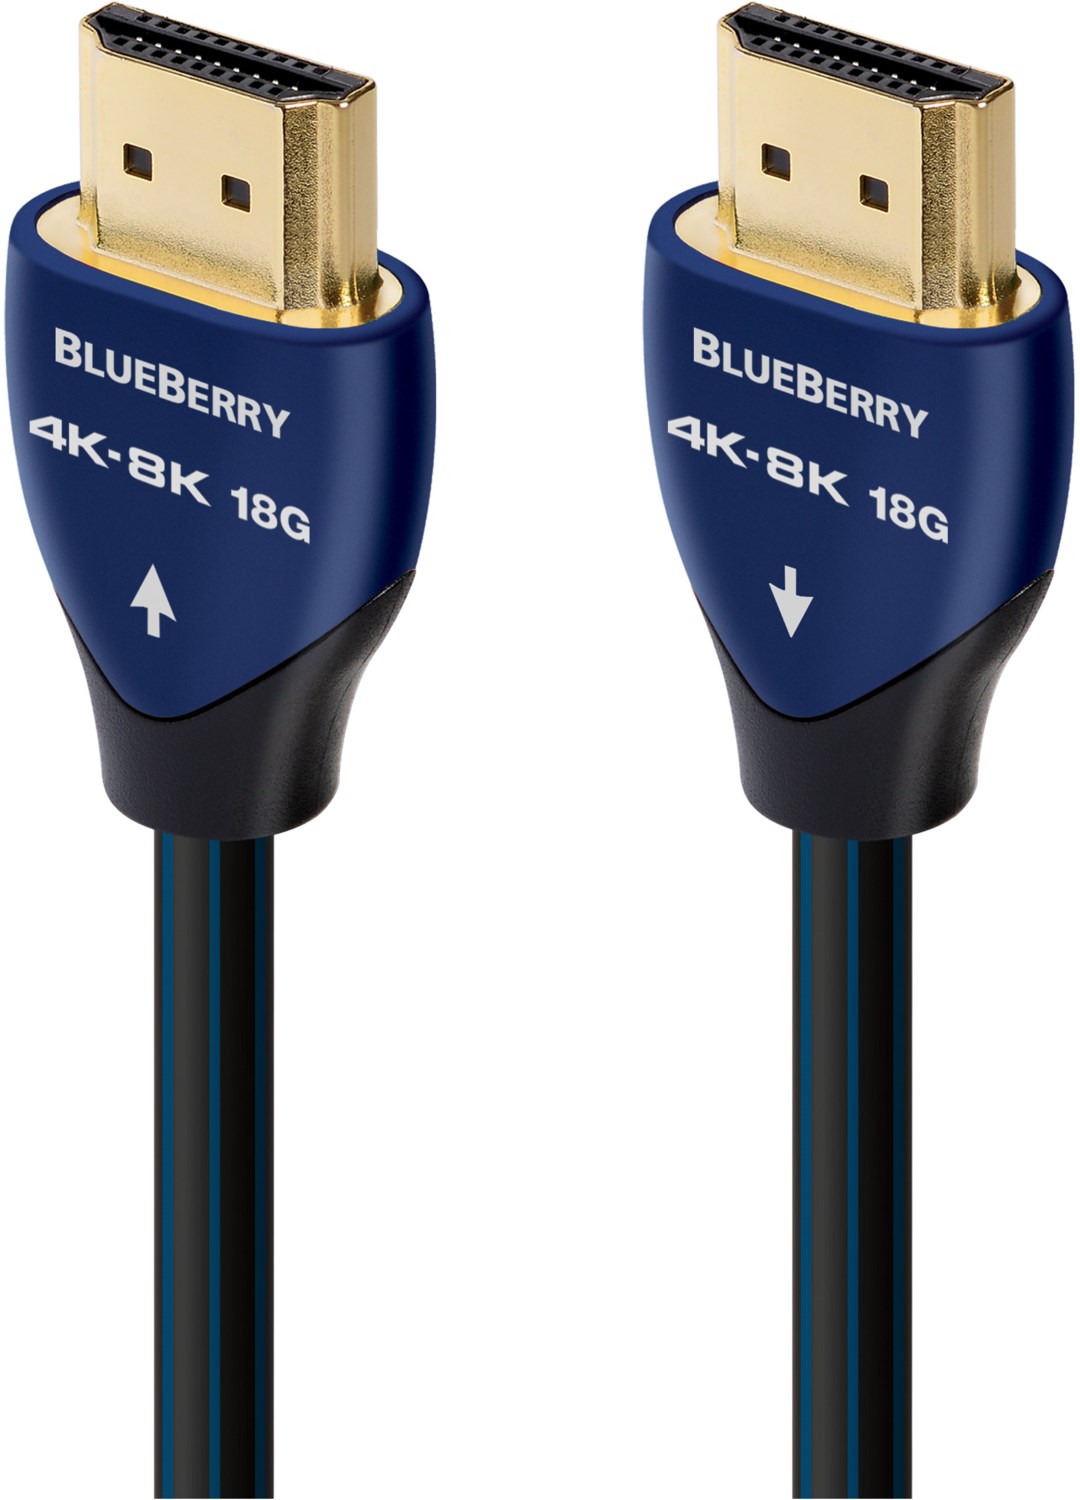 Blueberry HDMI Kabel (1m) von Audioquest